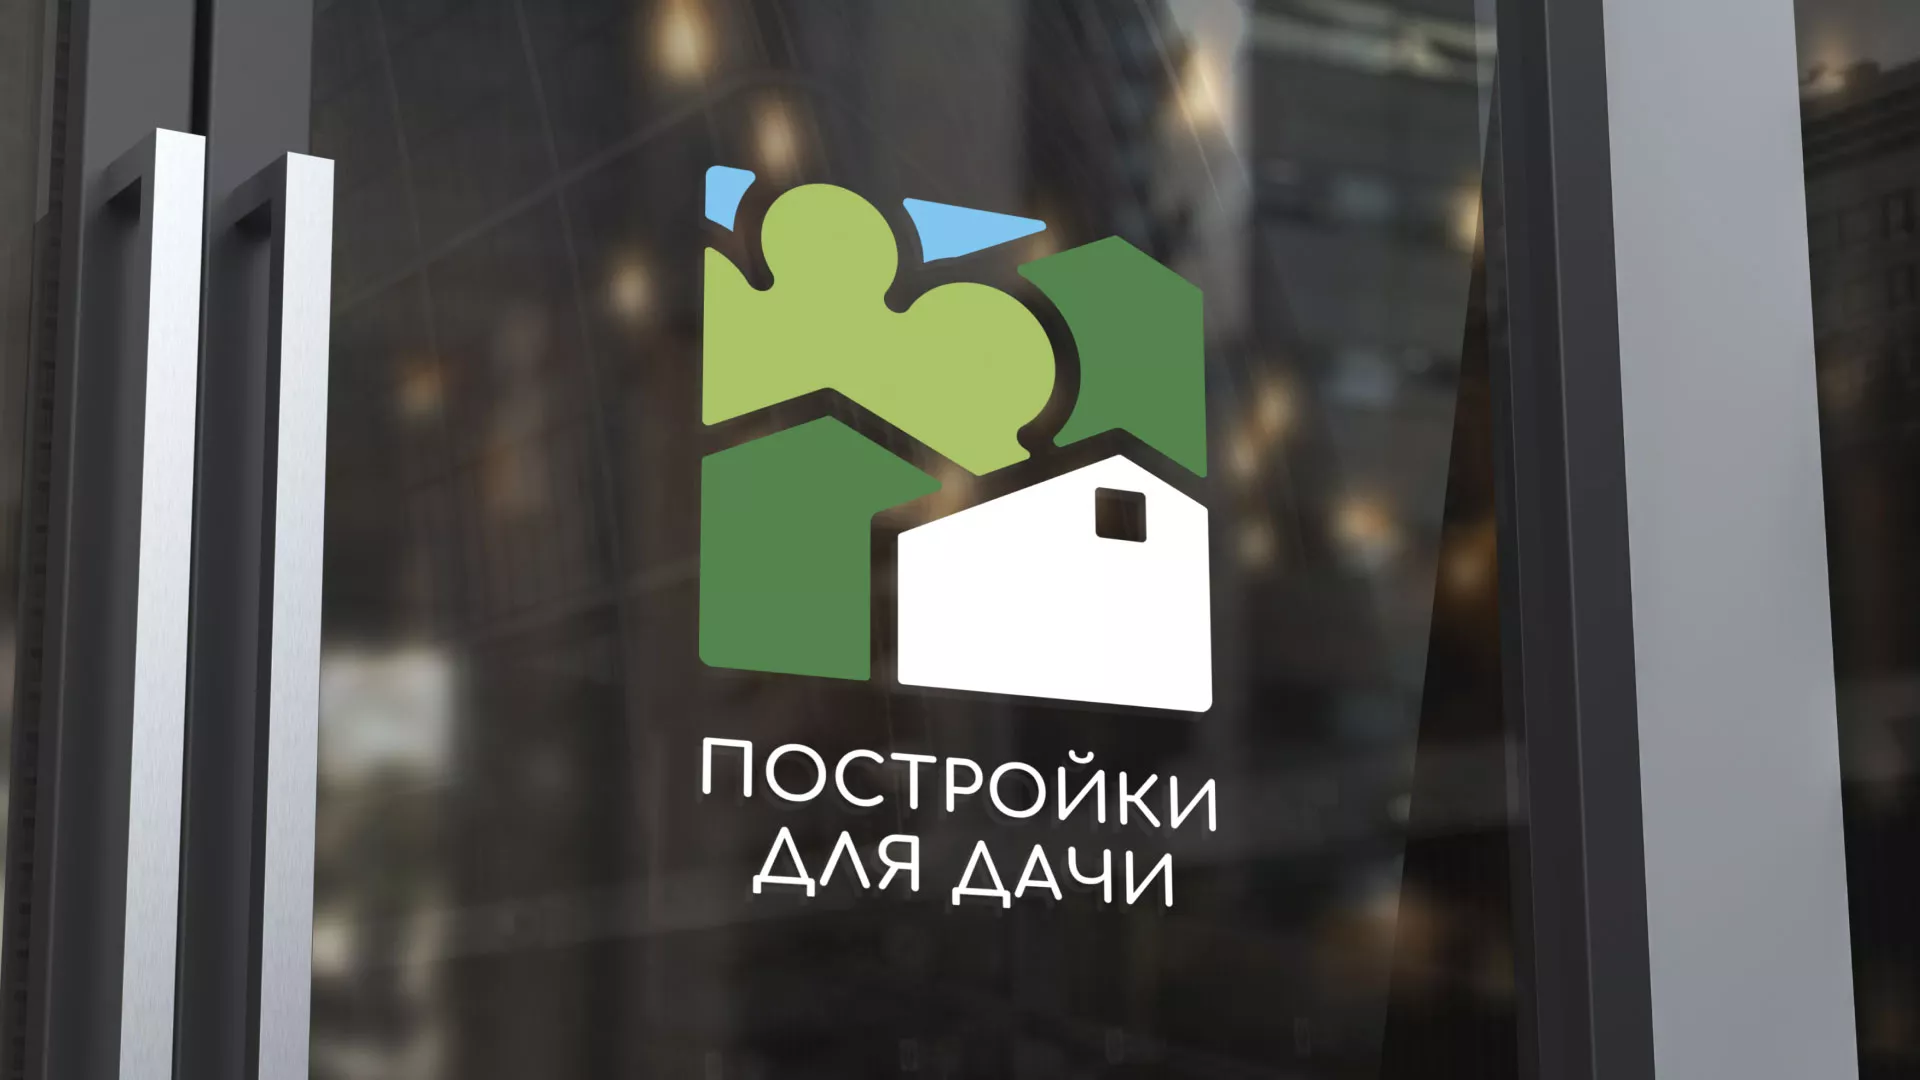 Разработка логотипа в Болохово для компании «Постройки для дачи»